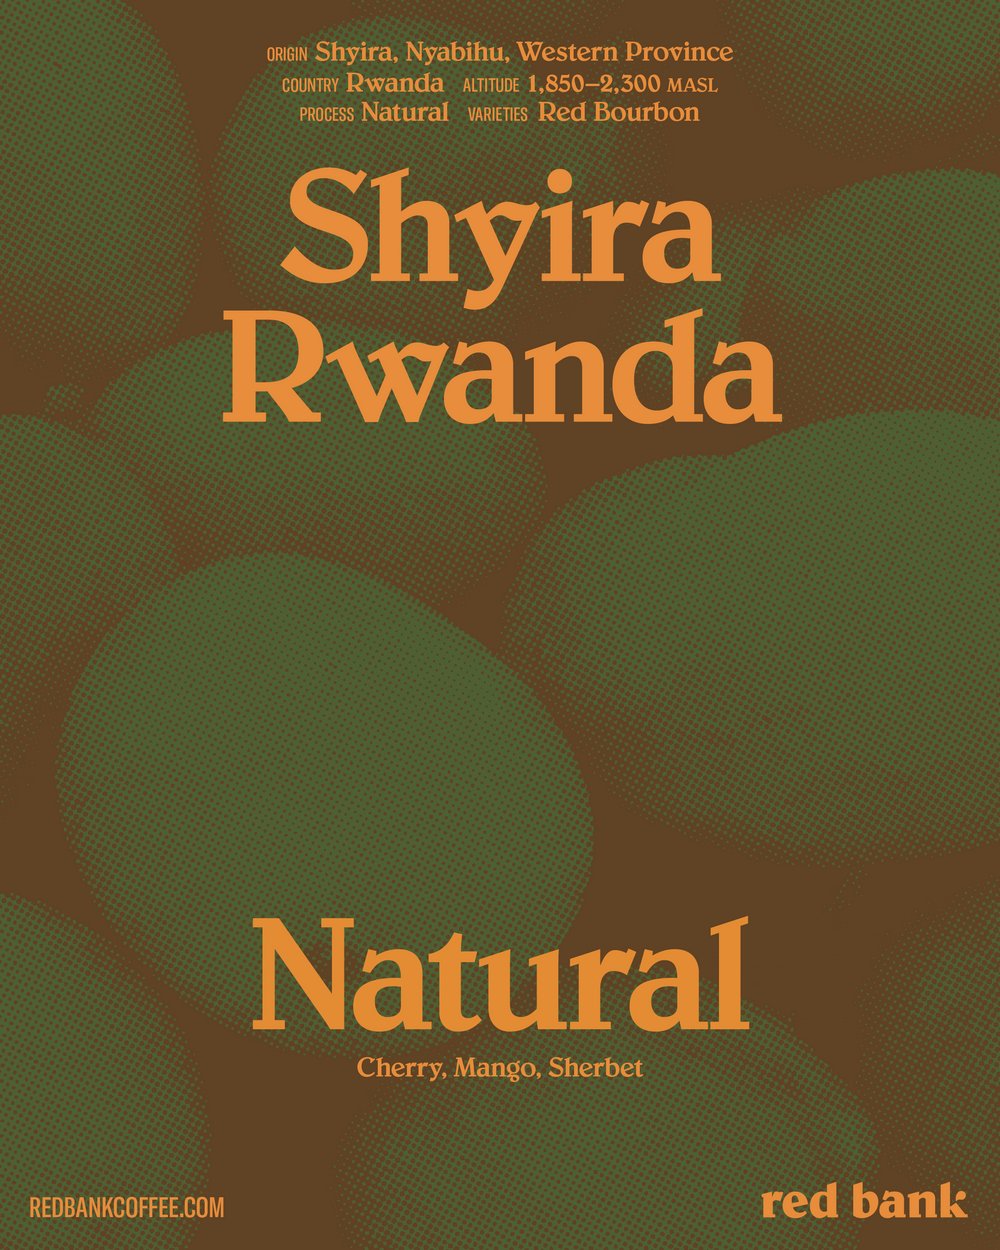 Shyira Natural